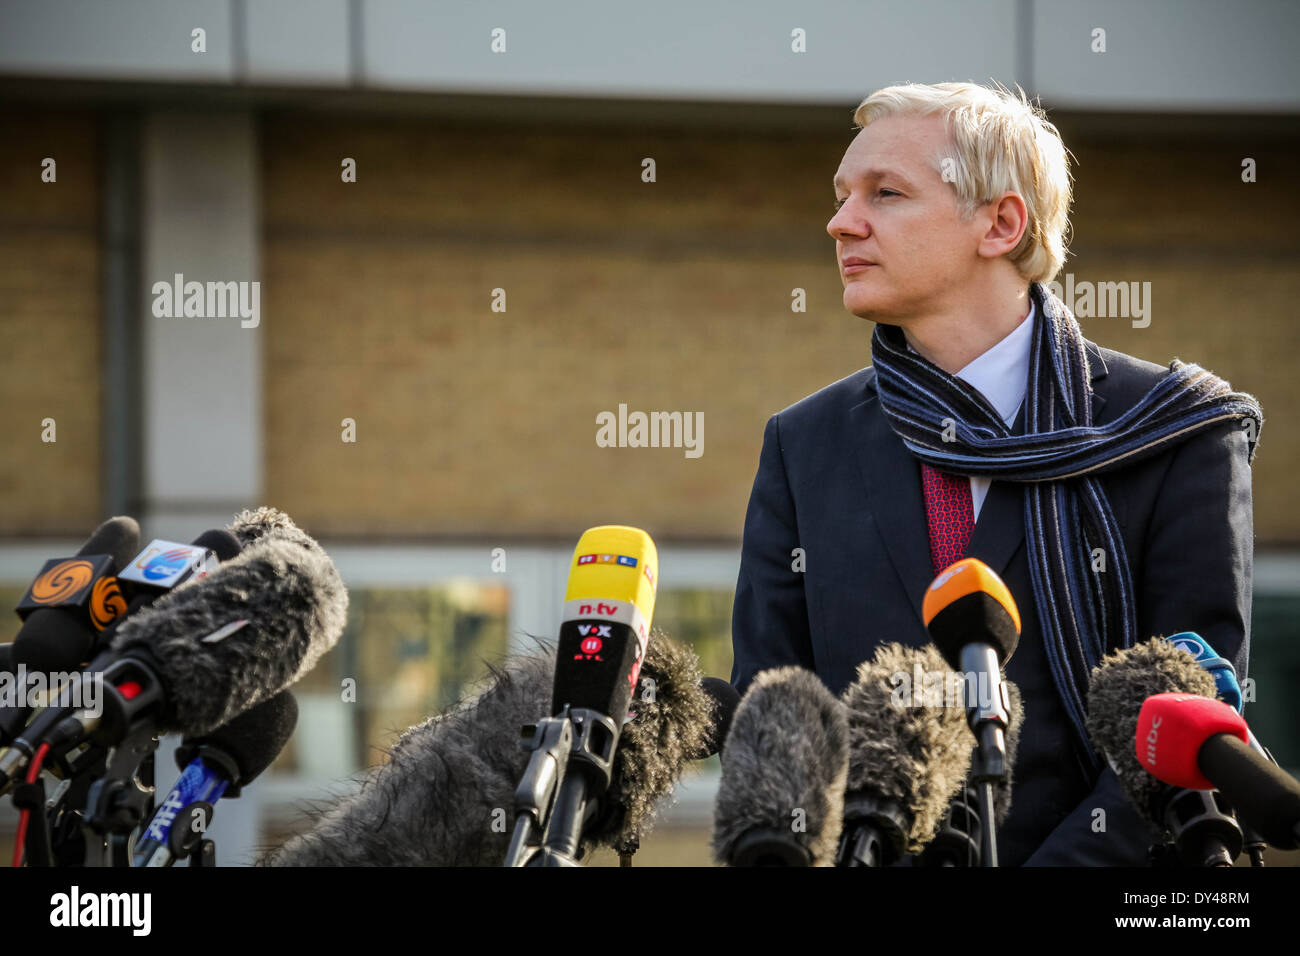 Le fondateur de Wikileaks, Julian Assange, parle aux médias après avoir comparu au tribunal de Belmarsh à Woolwich, Londres, Royaume-Uni. Banque D'Images